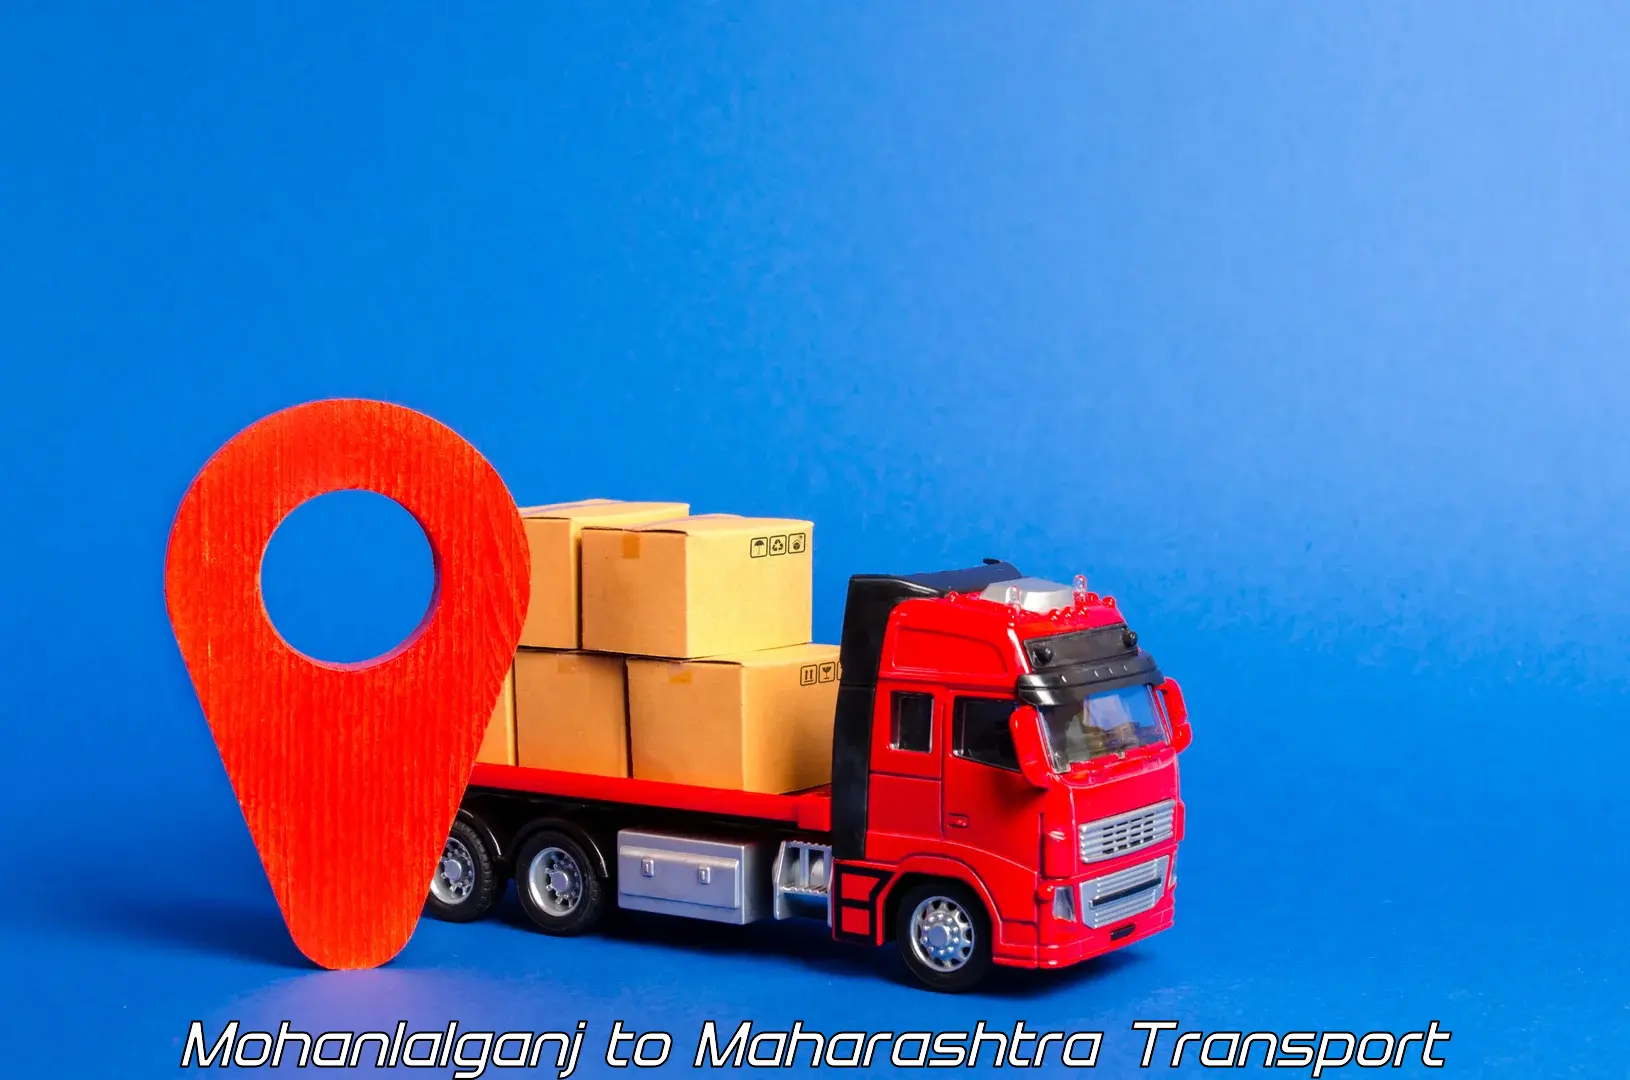 Nearby transport service Mohanlalganj to Mumbai